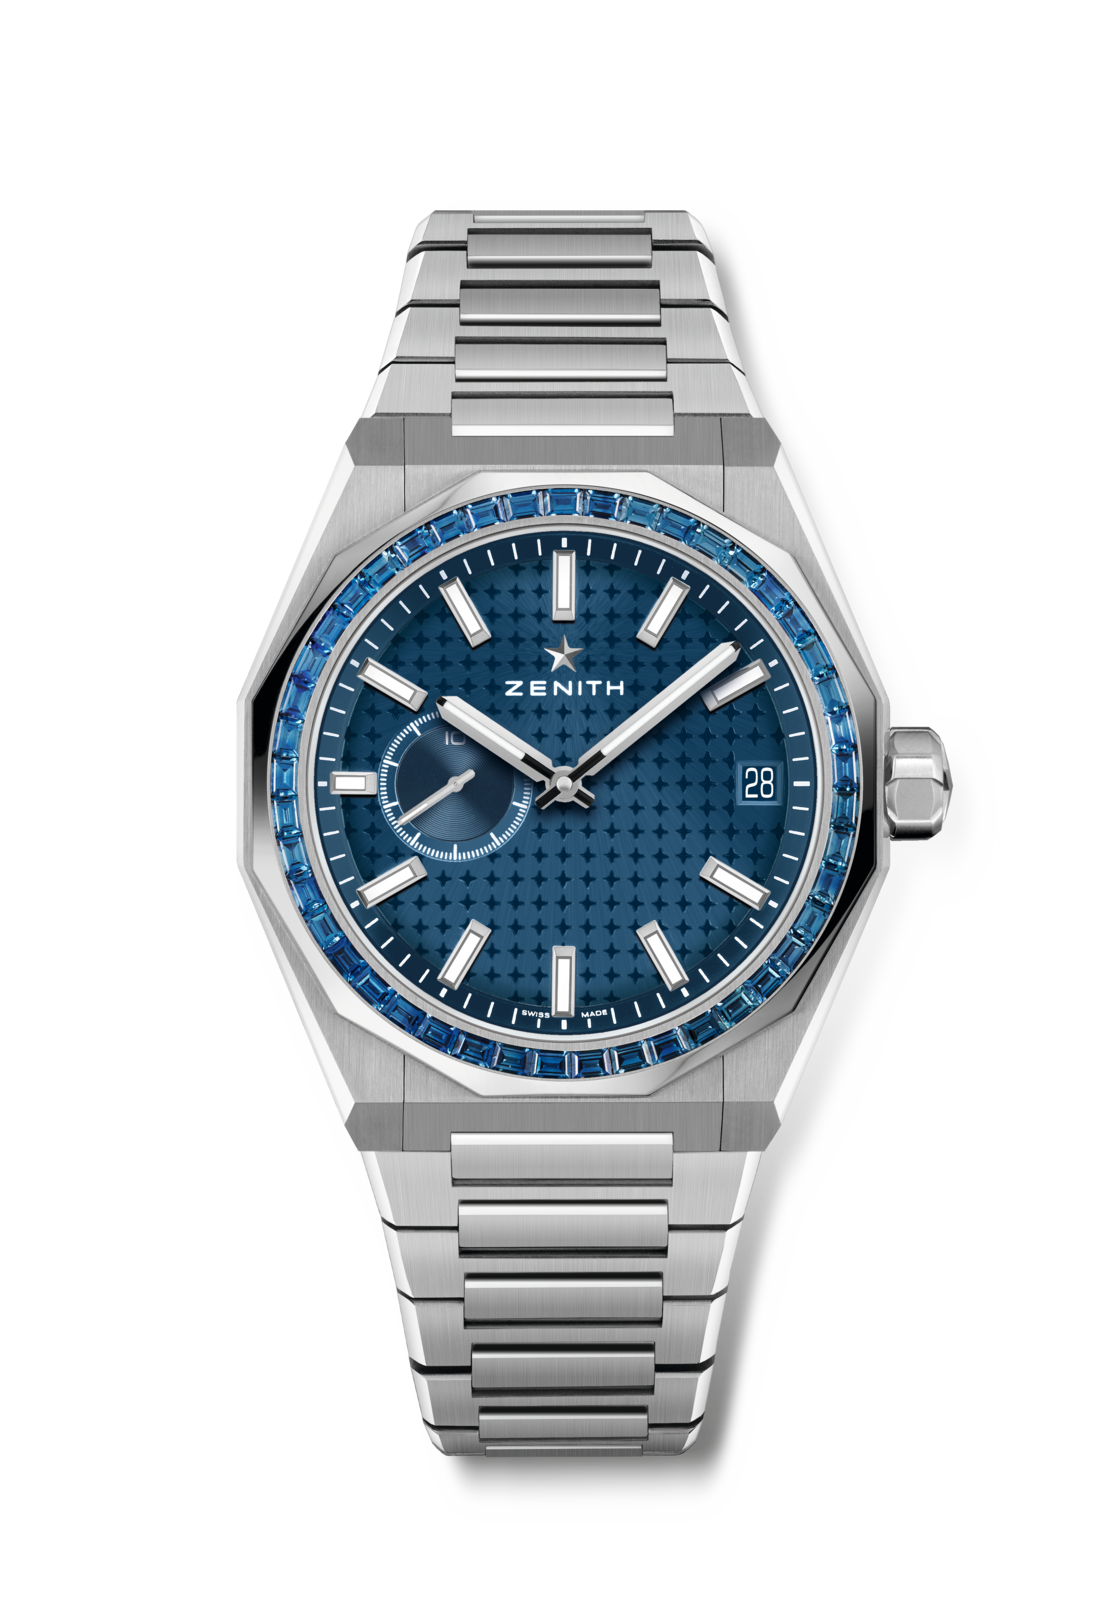 ゼニス公式サイト | デファイ スカイライン ブルーサファイア | Zenith Watches | DEFY Skyline Blue  Sapphire | 16.9300.3620/51.I001 | 169300362051I001 | 1/10秒精度のエル・プリメロ搭載 |  エルプリメロ | スイス高級腕時計ブランド | ゼニス - ZENITH